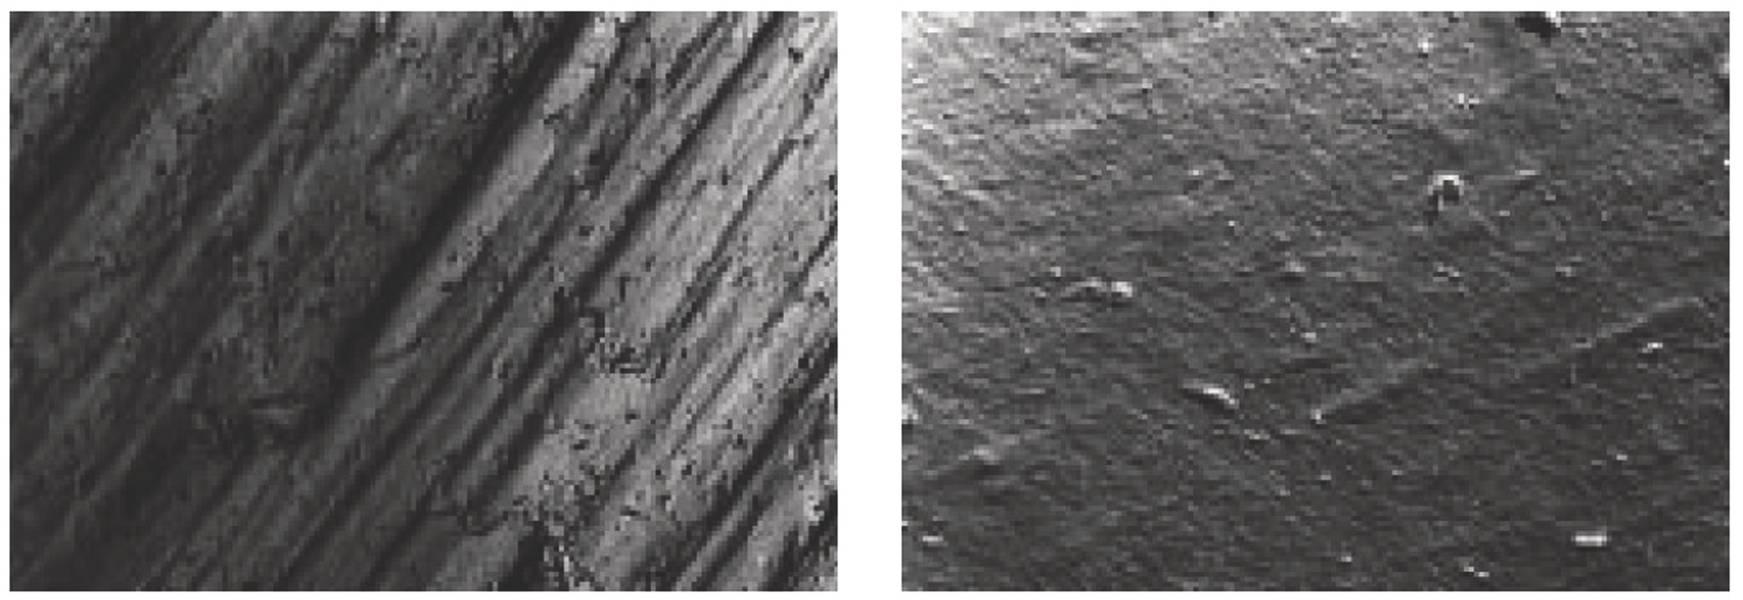 （図1Bおよび2B）走査電子顕微鏡（モジュール25mm、Rt =44μmRA=4.3μm/拡大50倍）で撮影した新しいピニオンフランクの表面の写真。